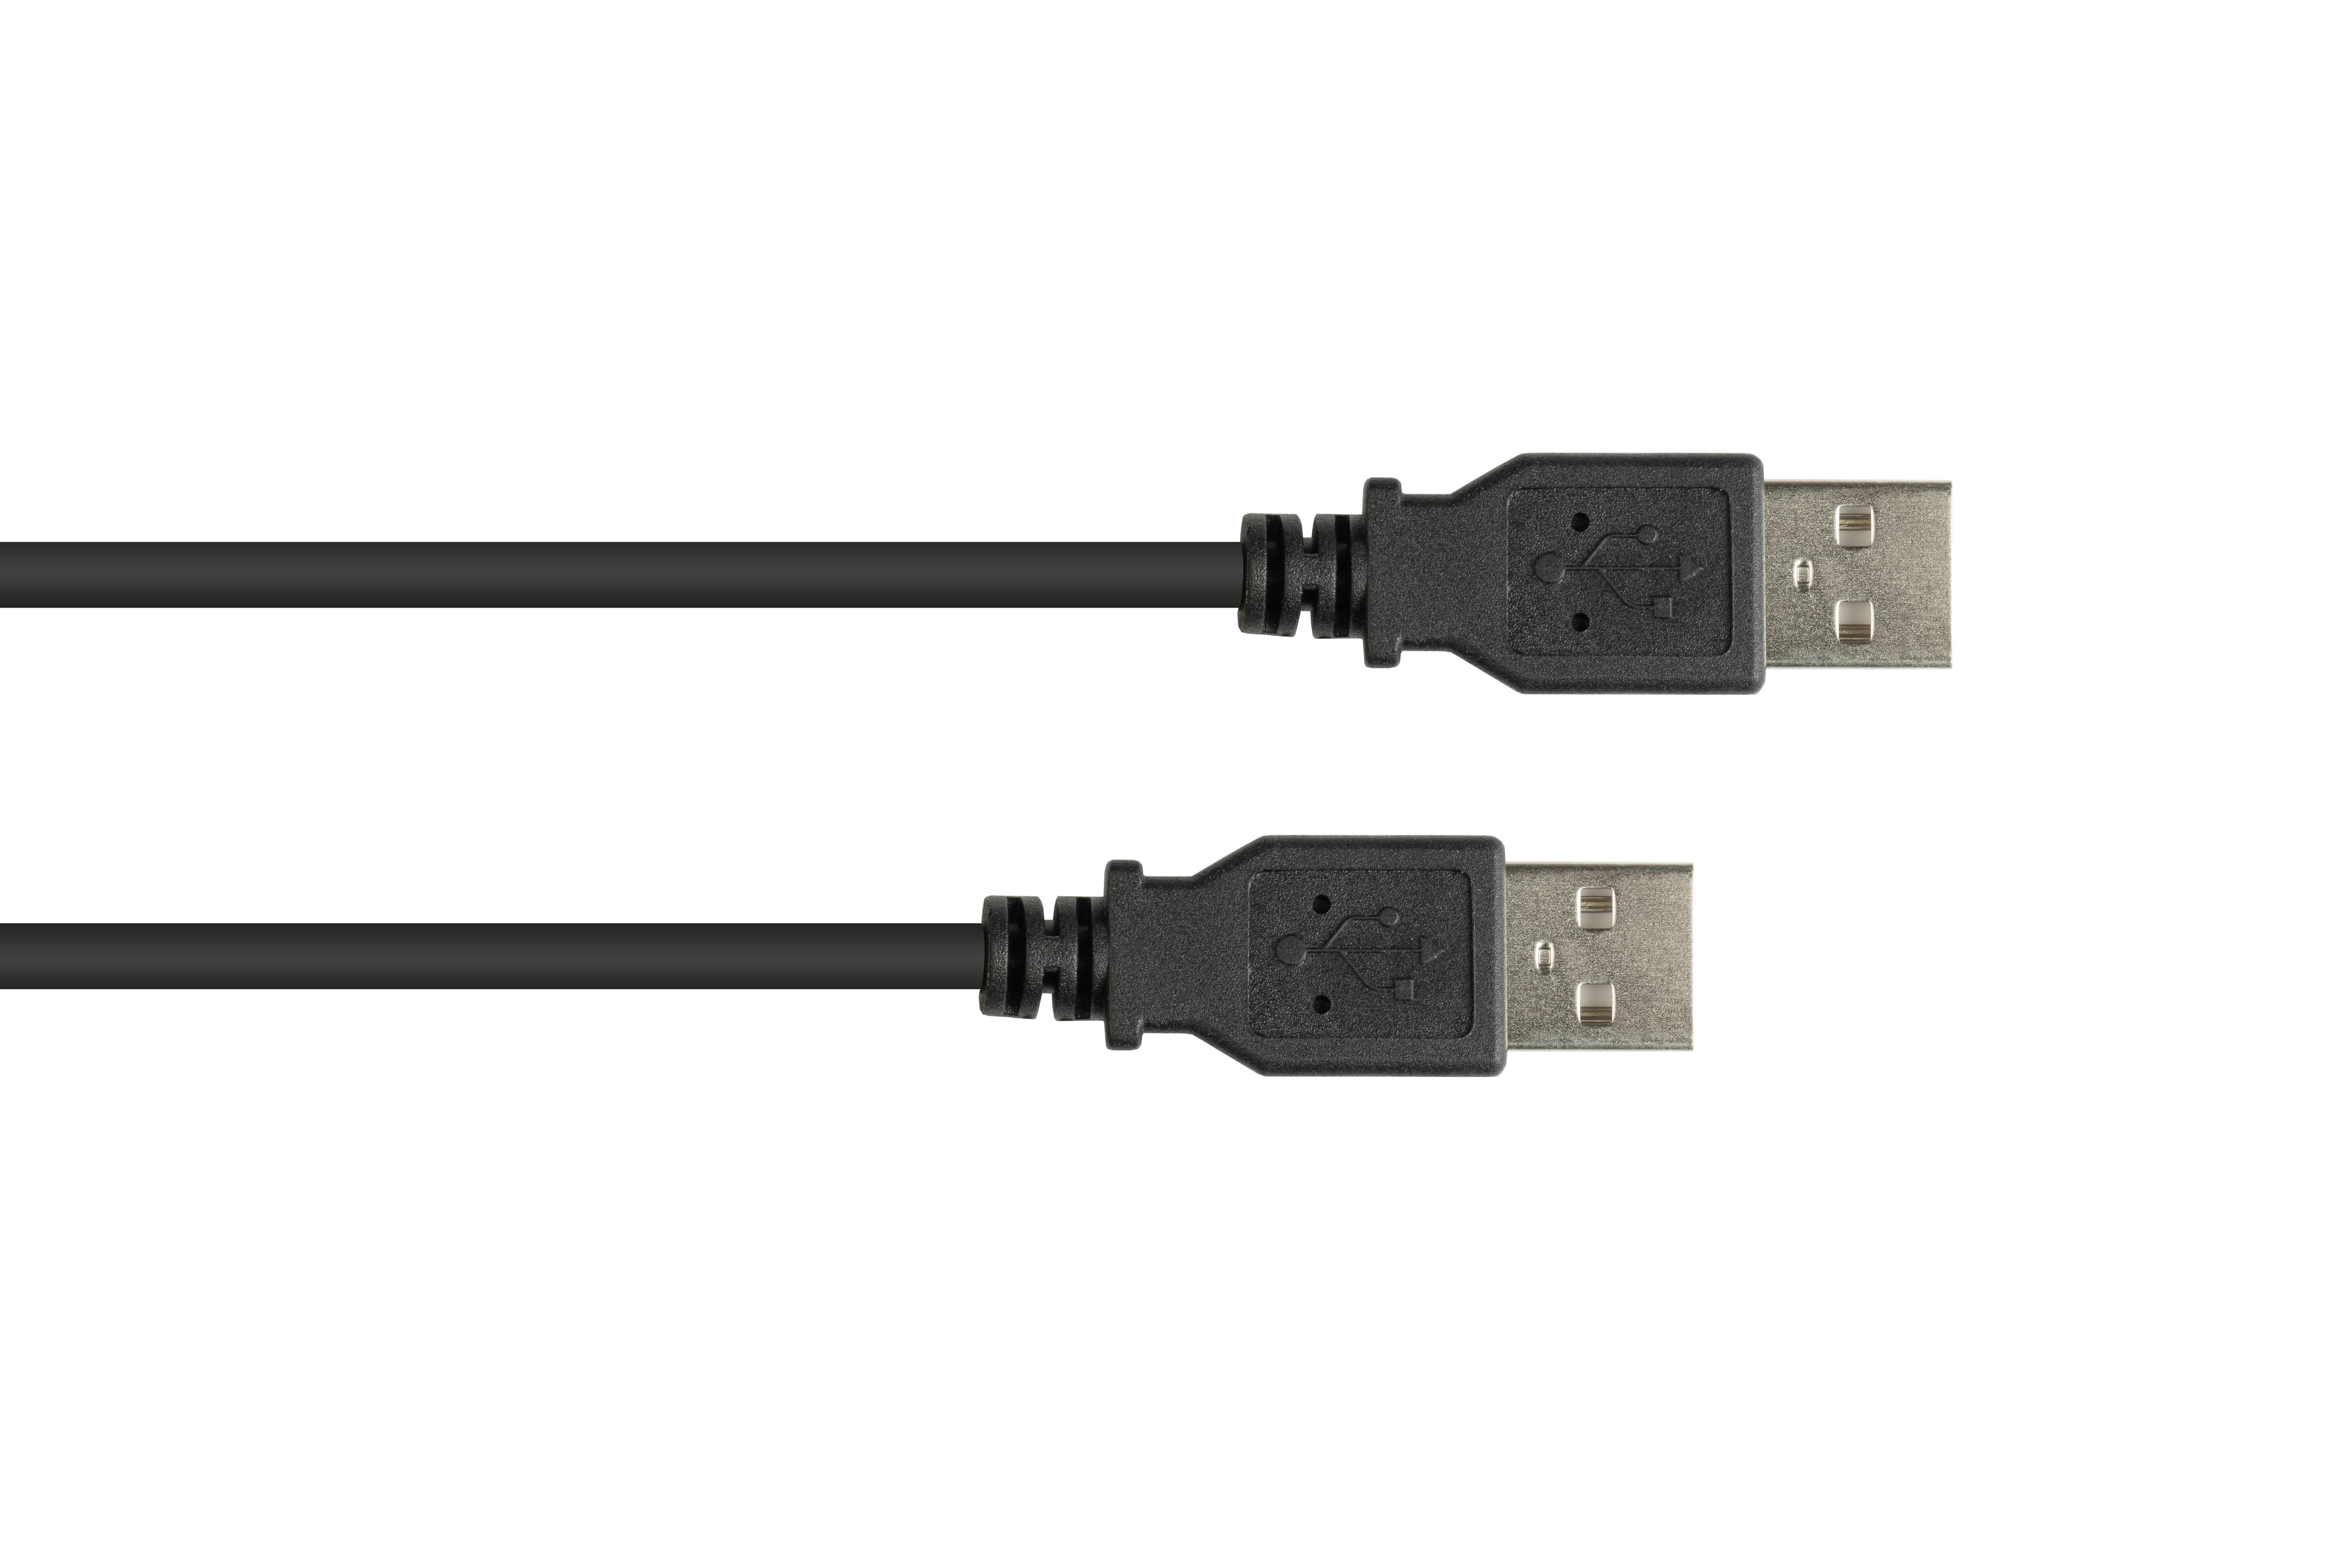 Anschlusskabel schwarz High-Speed A 2.0 A KABELMEISTER Stecker USB Stecker, an EASY EASY